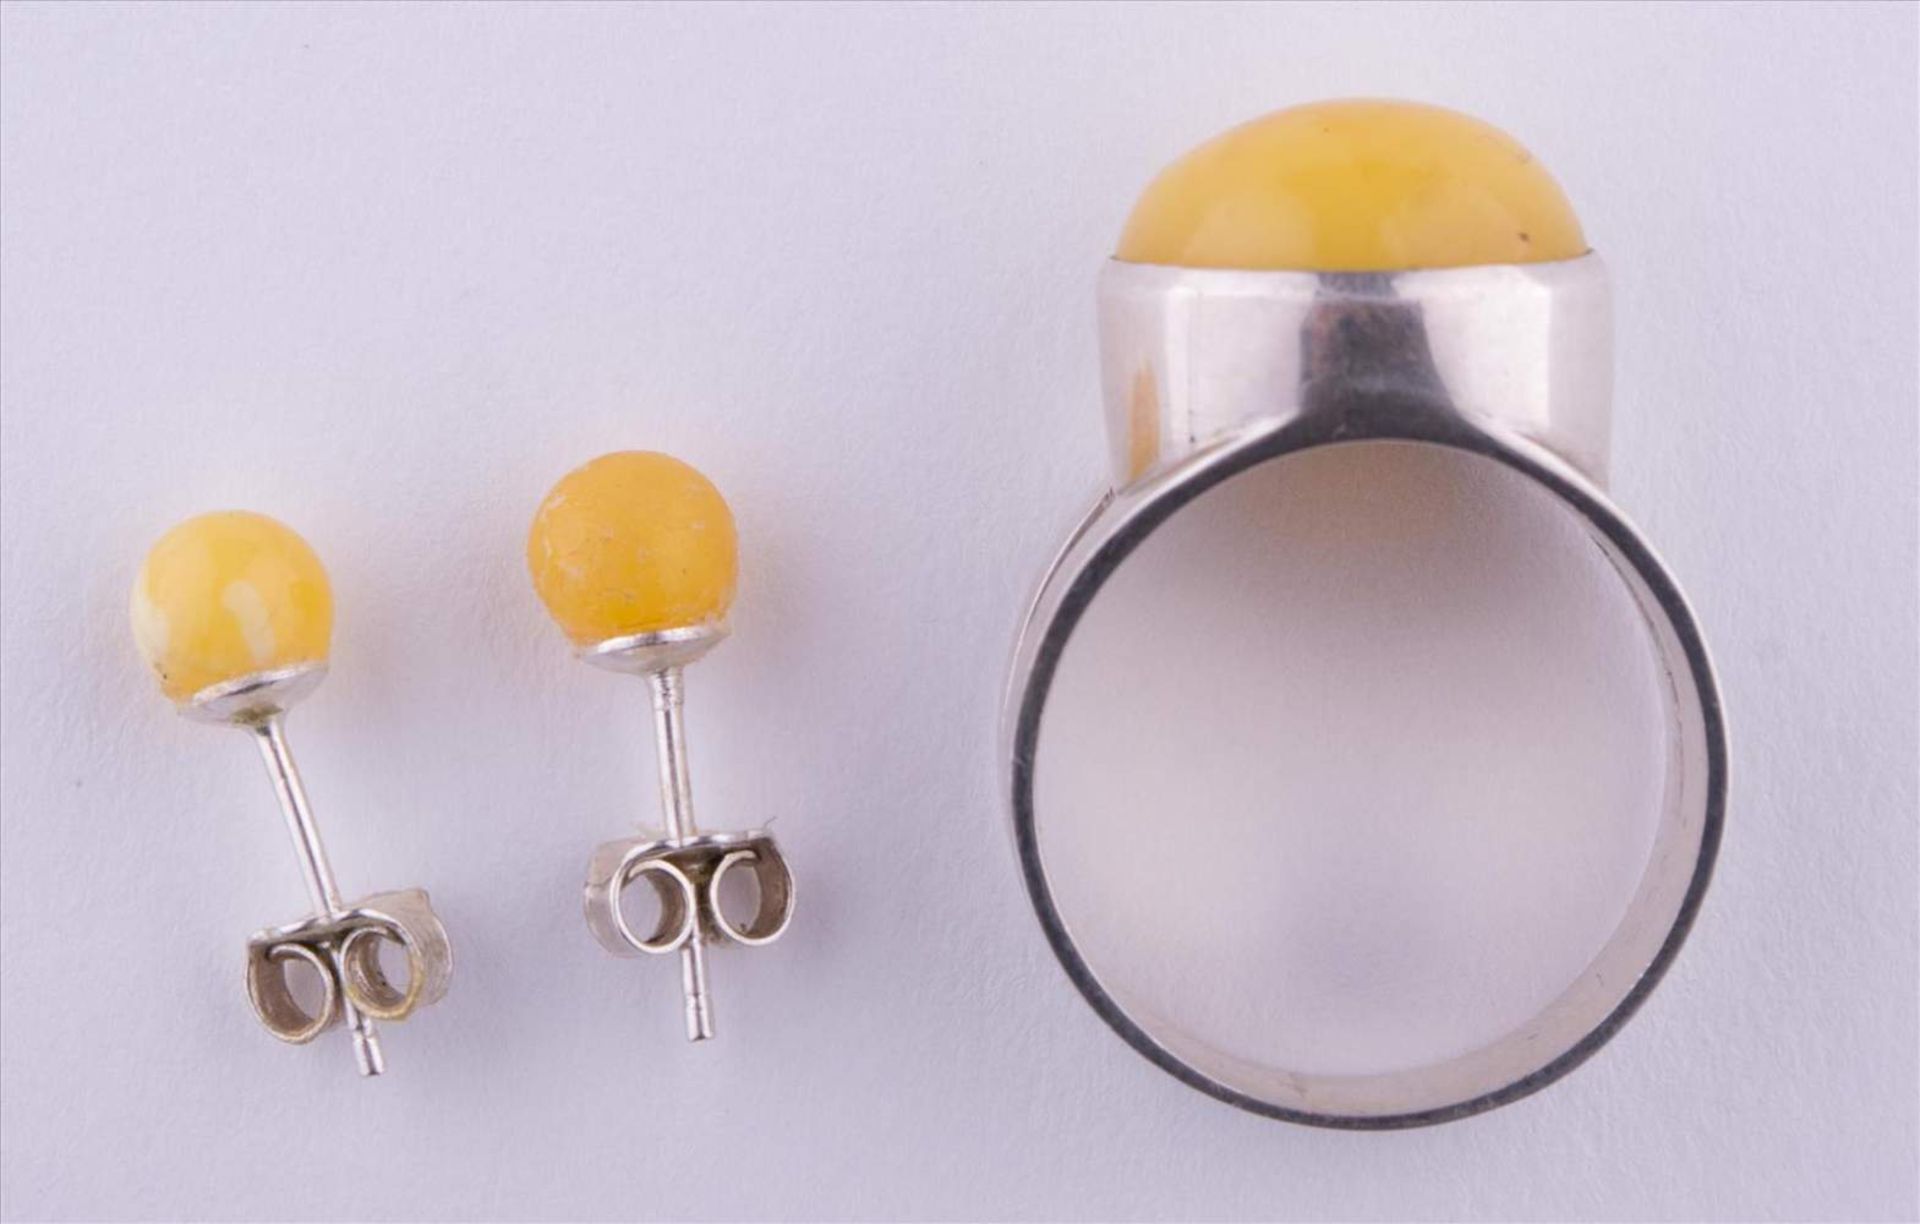 Bernstein Schmuckset / Amber jewellery set Paar Ohrringe und Ring Ø 19 mm, 835/000 Silber / pair - Bild 2 aus 4